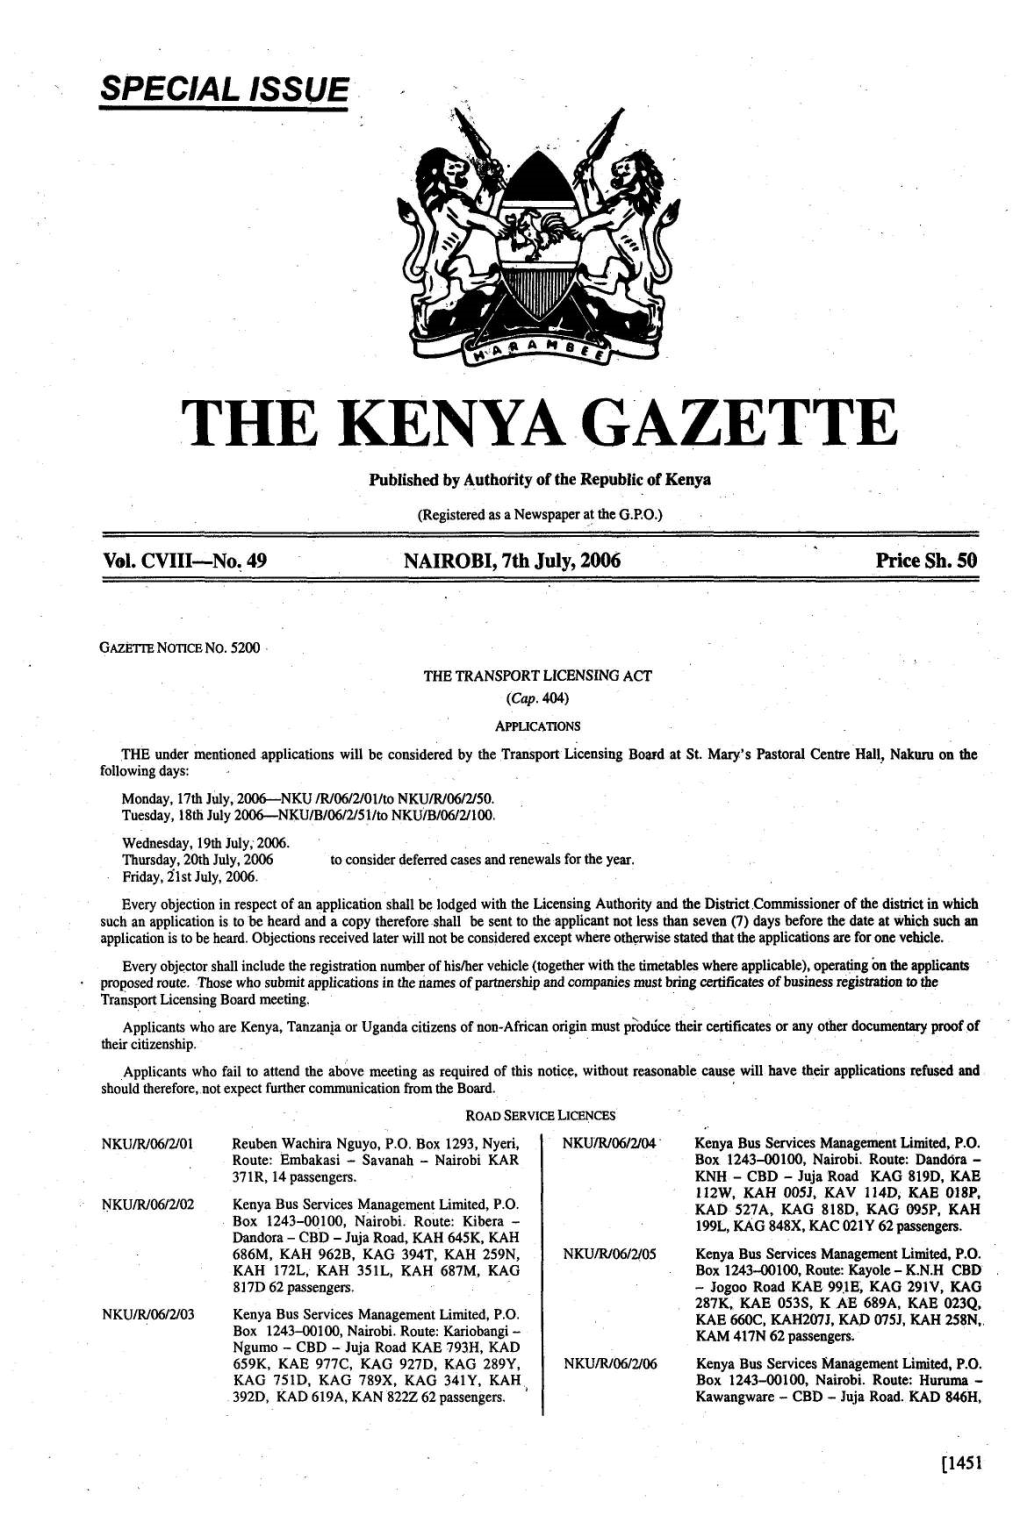 The Kenyagazette